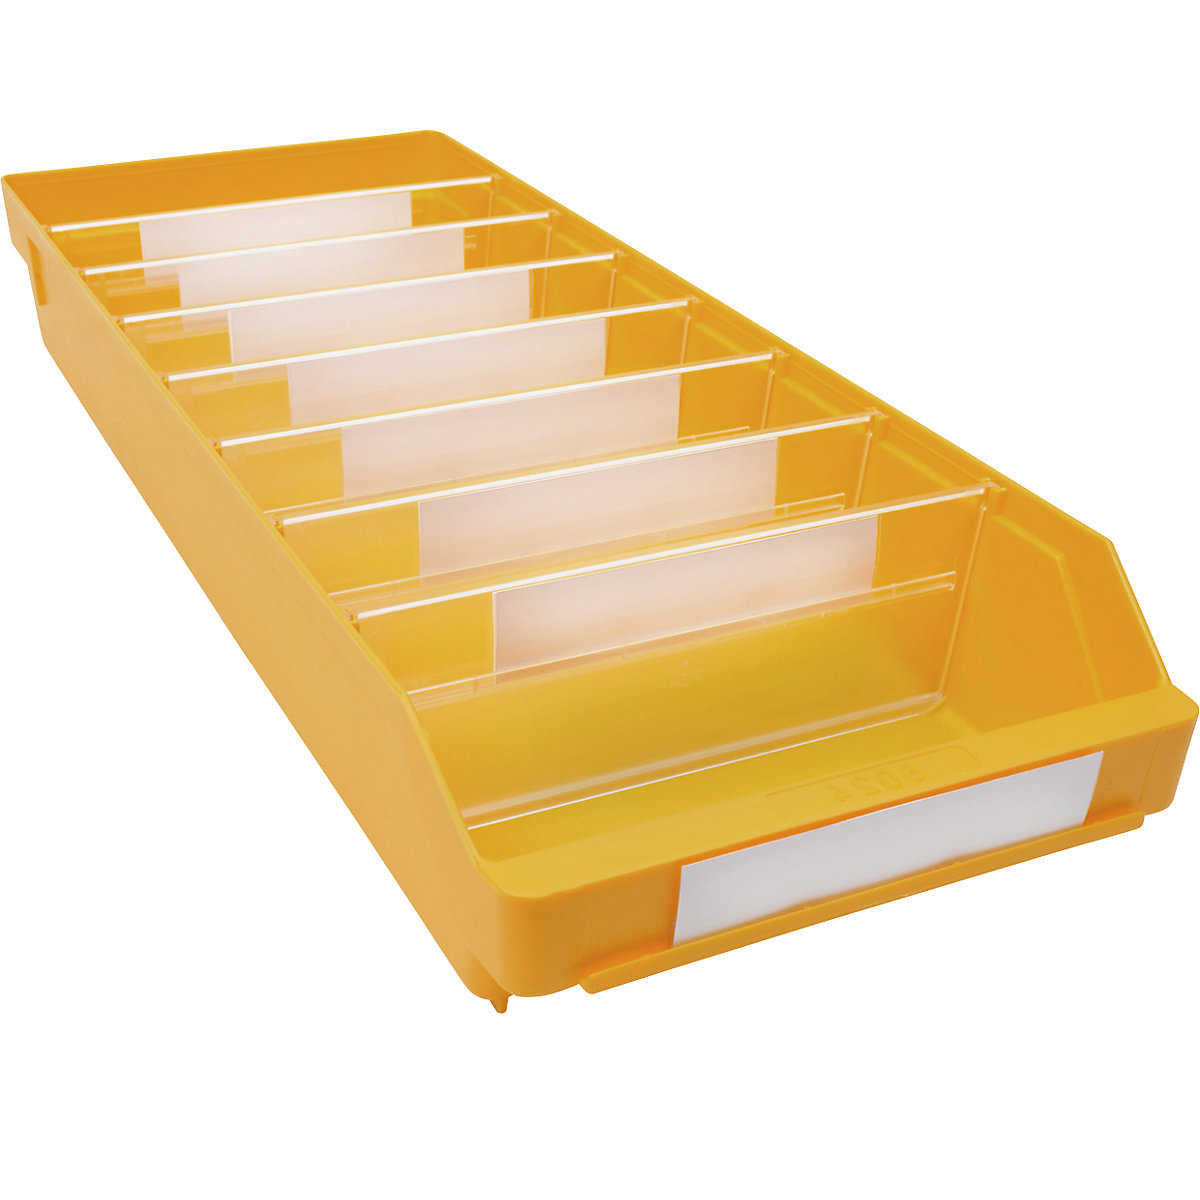 Regalkasten aus hochschlagfestem Polypropylen STEMO, gelb, LxBxH 600 x 240 x 95 mm, VE 15 Stk-12